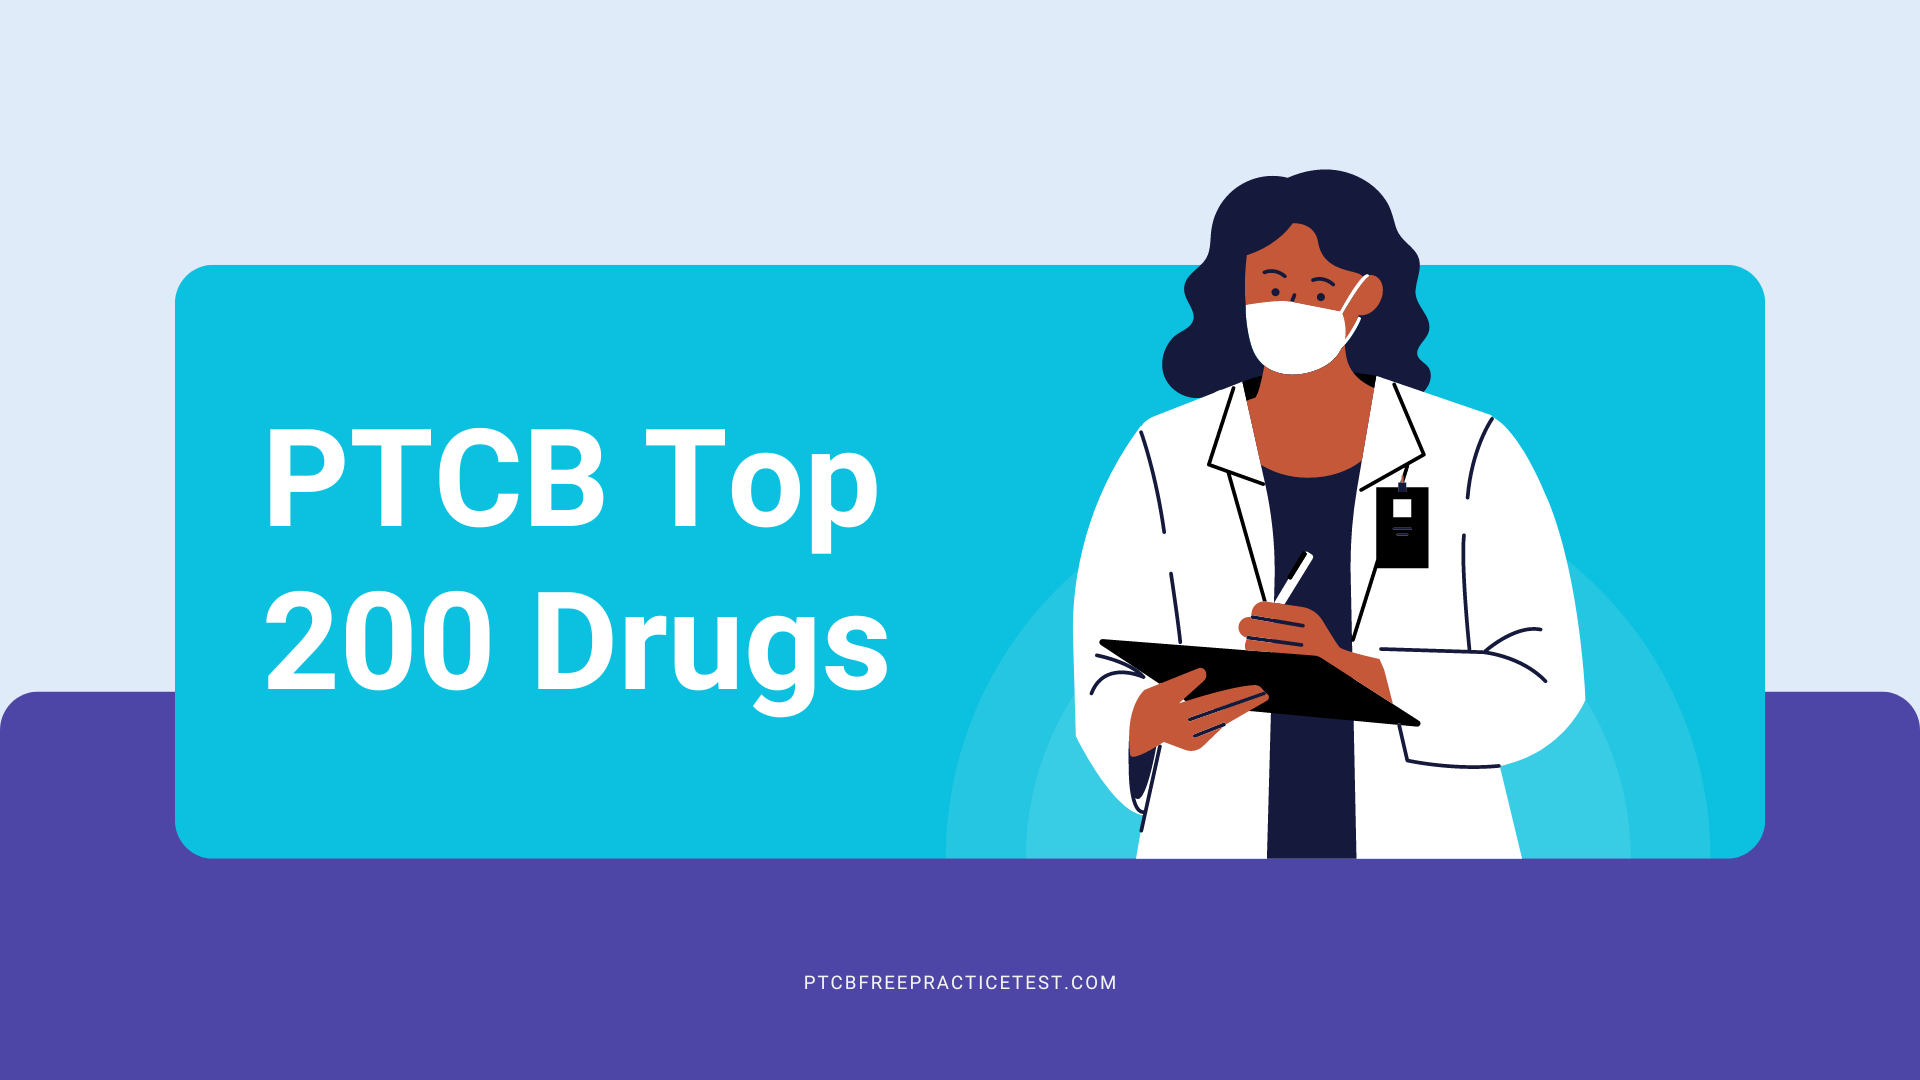 PTCB Top 200 Drugs